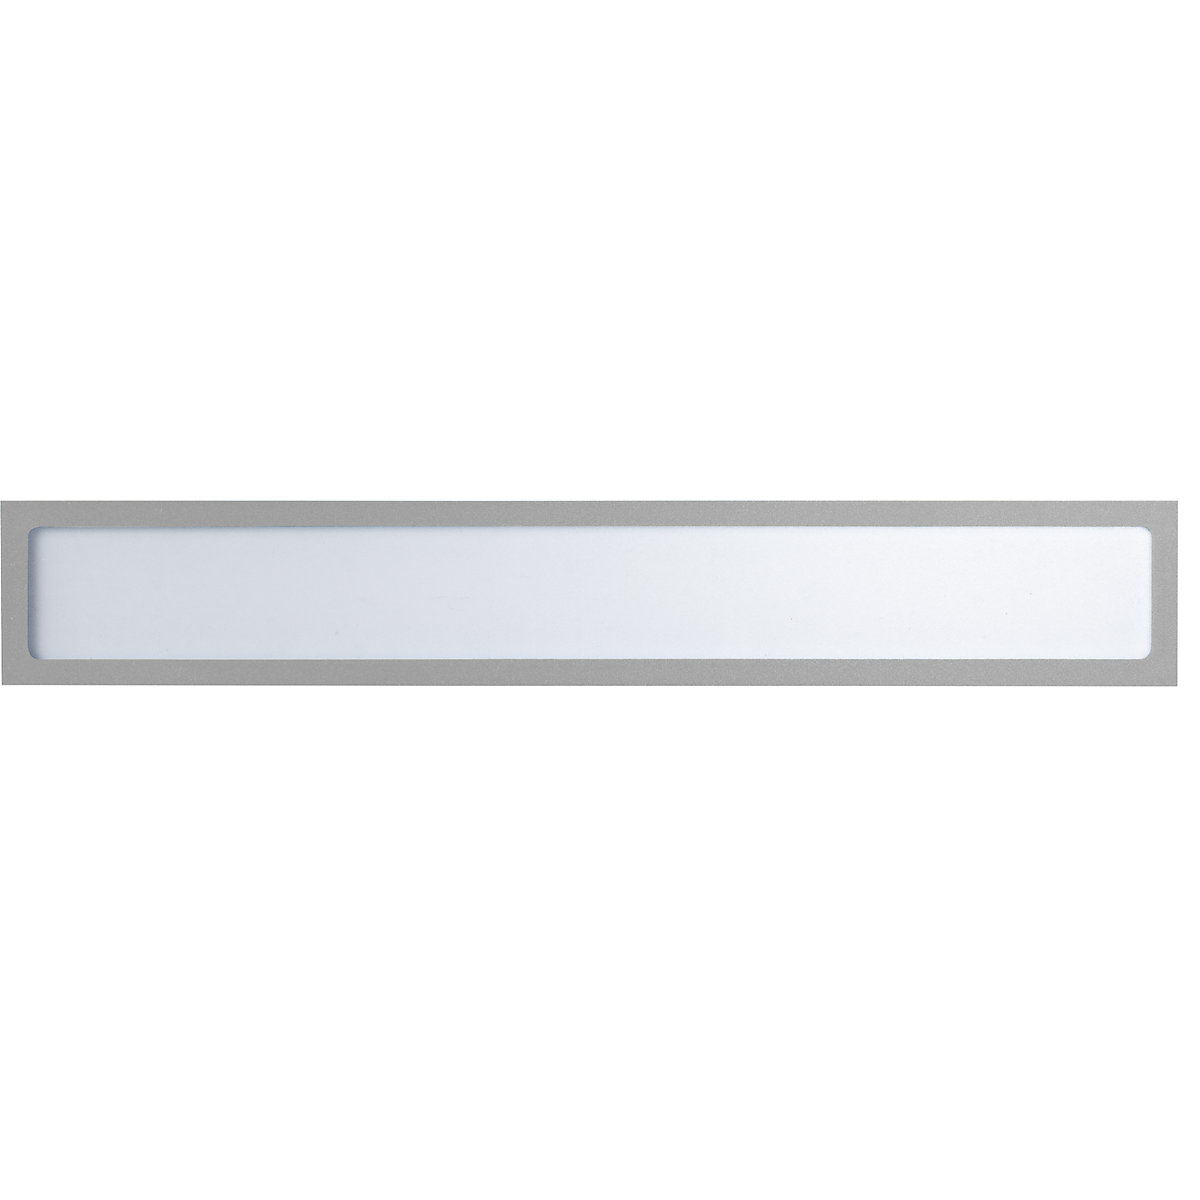 Pochette info magnétique – eurokraft basic, pour inscriptions personnalisées, format A3 horizontal / A2 vertical, 435 x 60 mm, cadre argenté, lot de 10-7